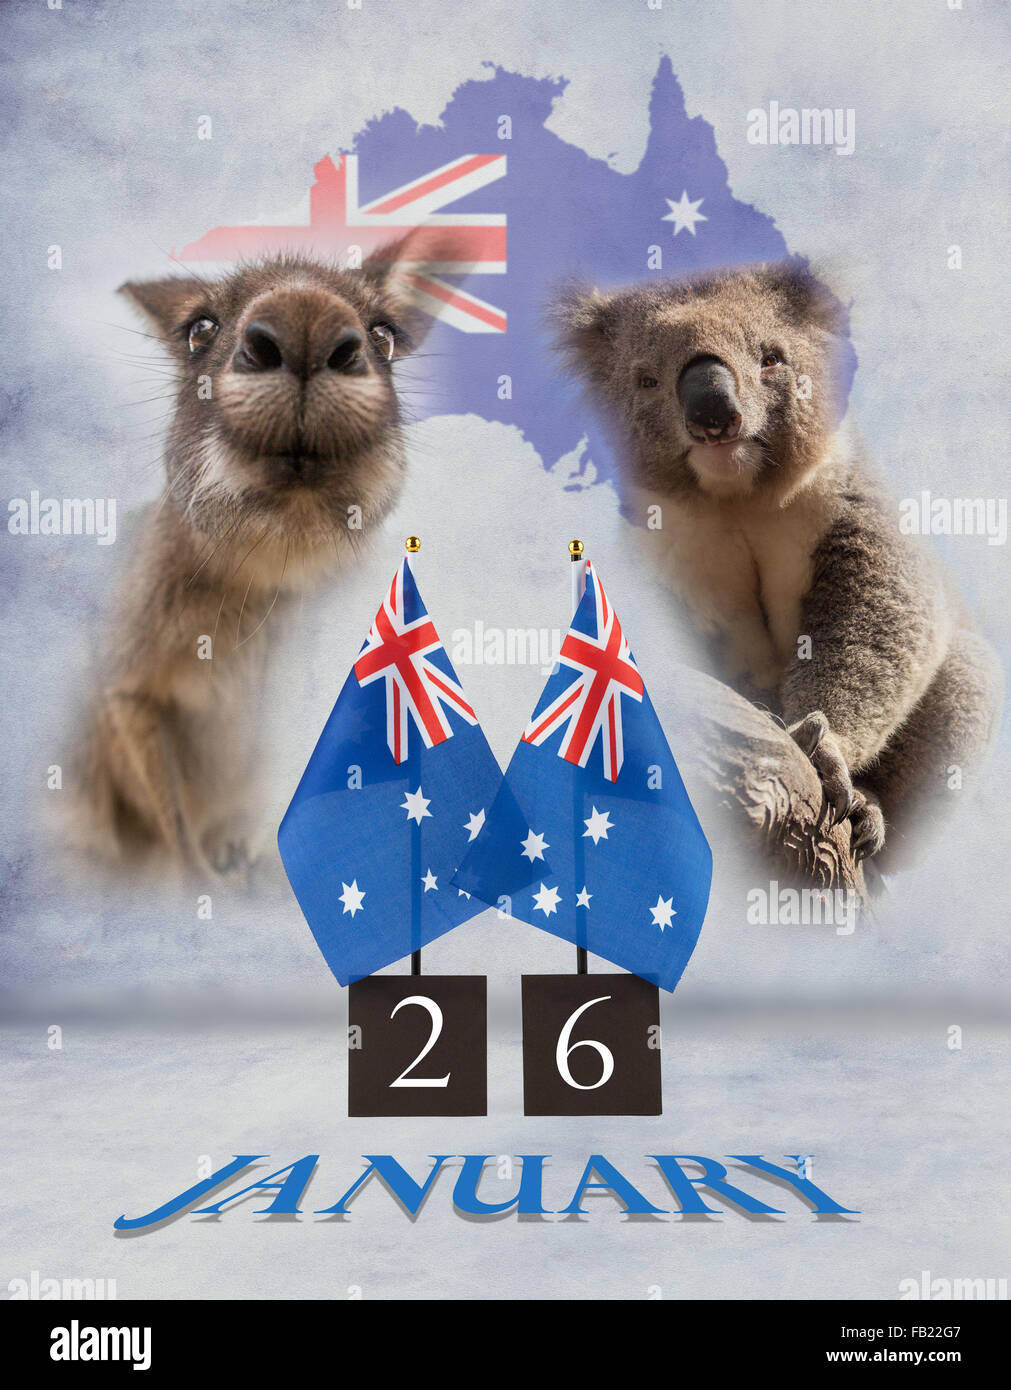 Deux Australian Bureau drapeaux, koala et kangourou. 26 janvier Australie divers messages d'symboles sur la texture du béton peint Banque D'Images